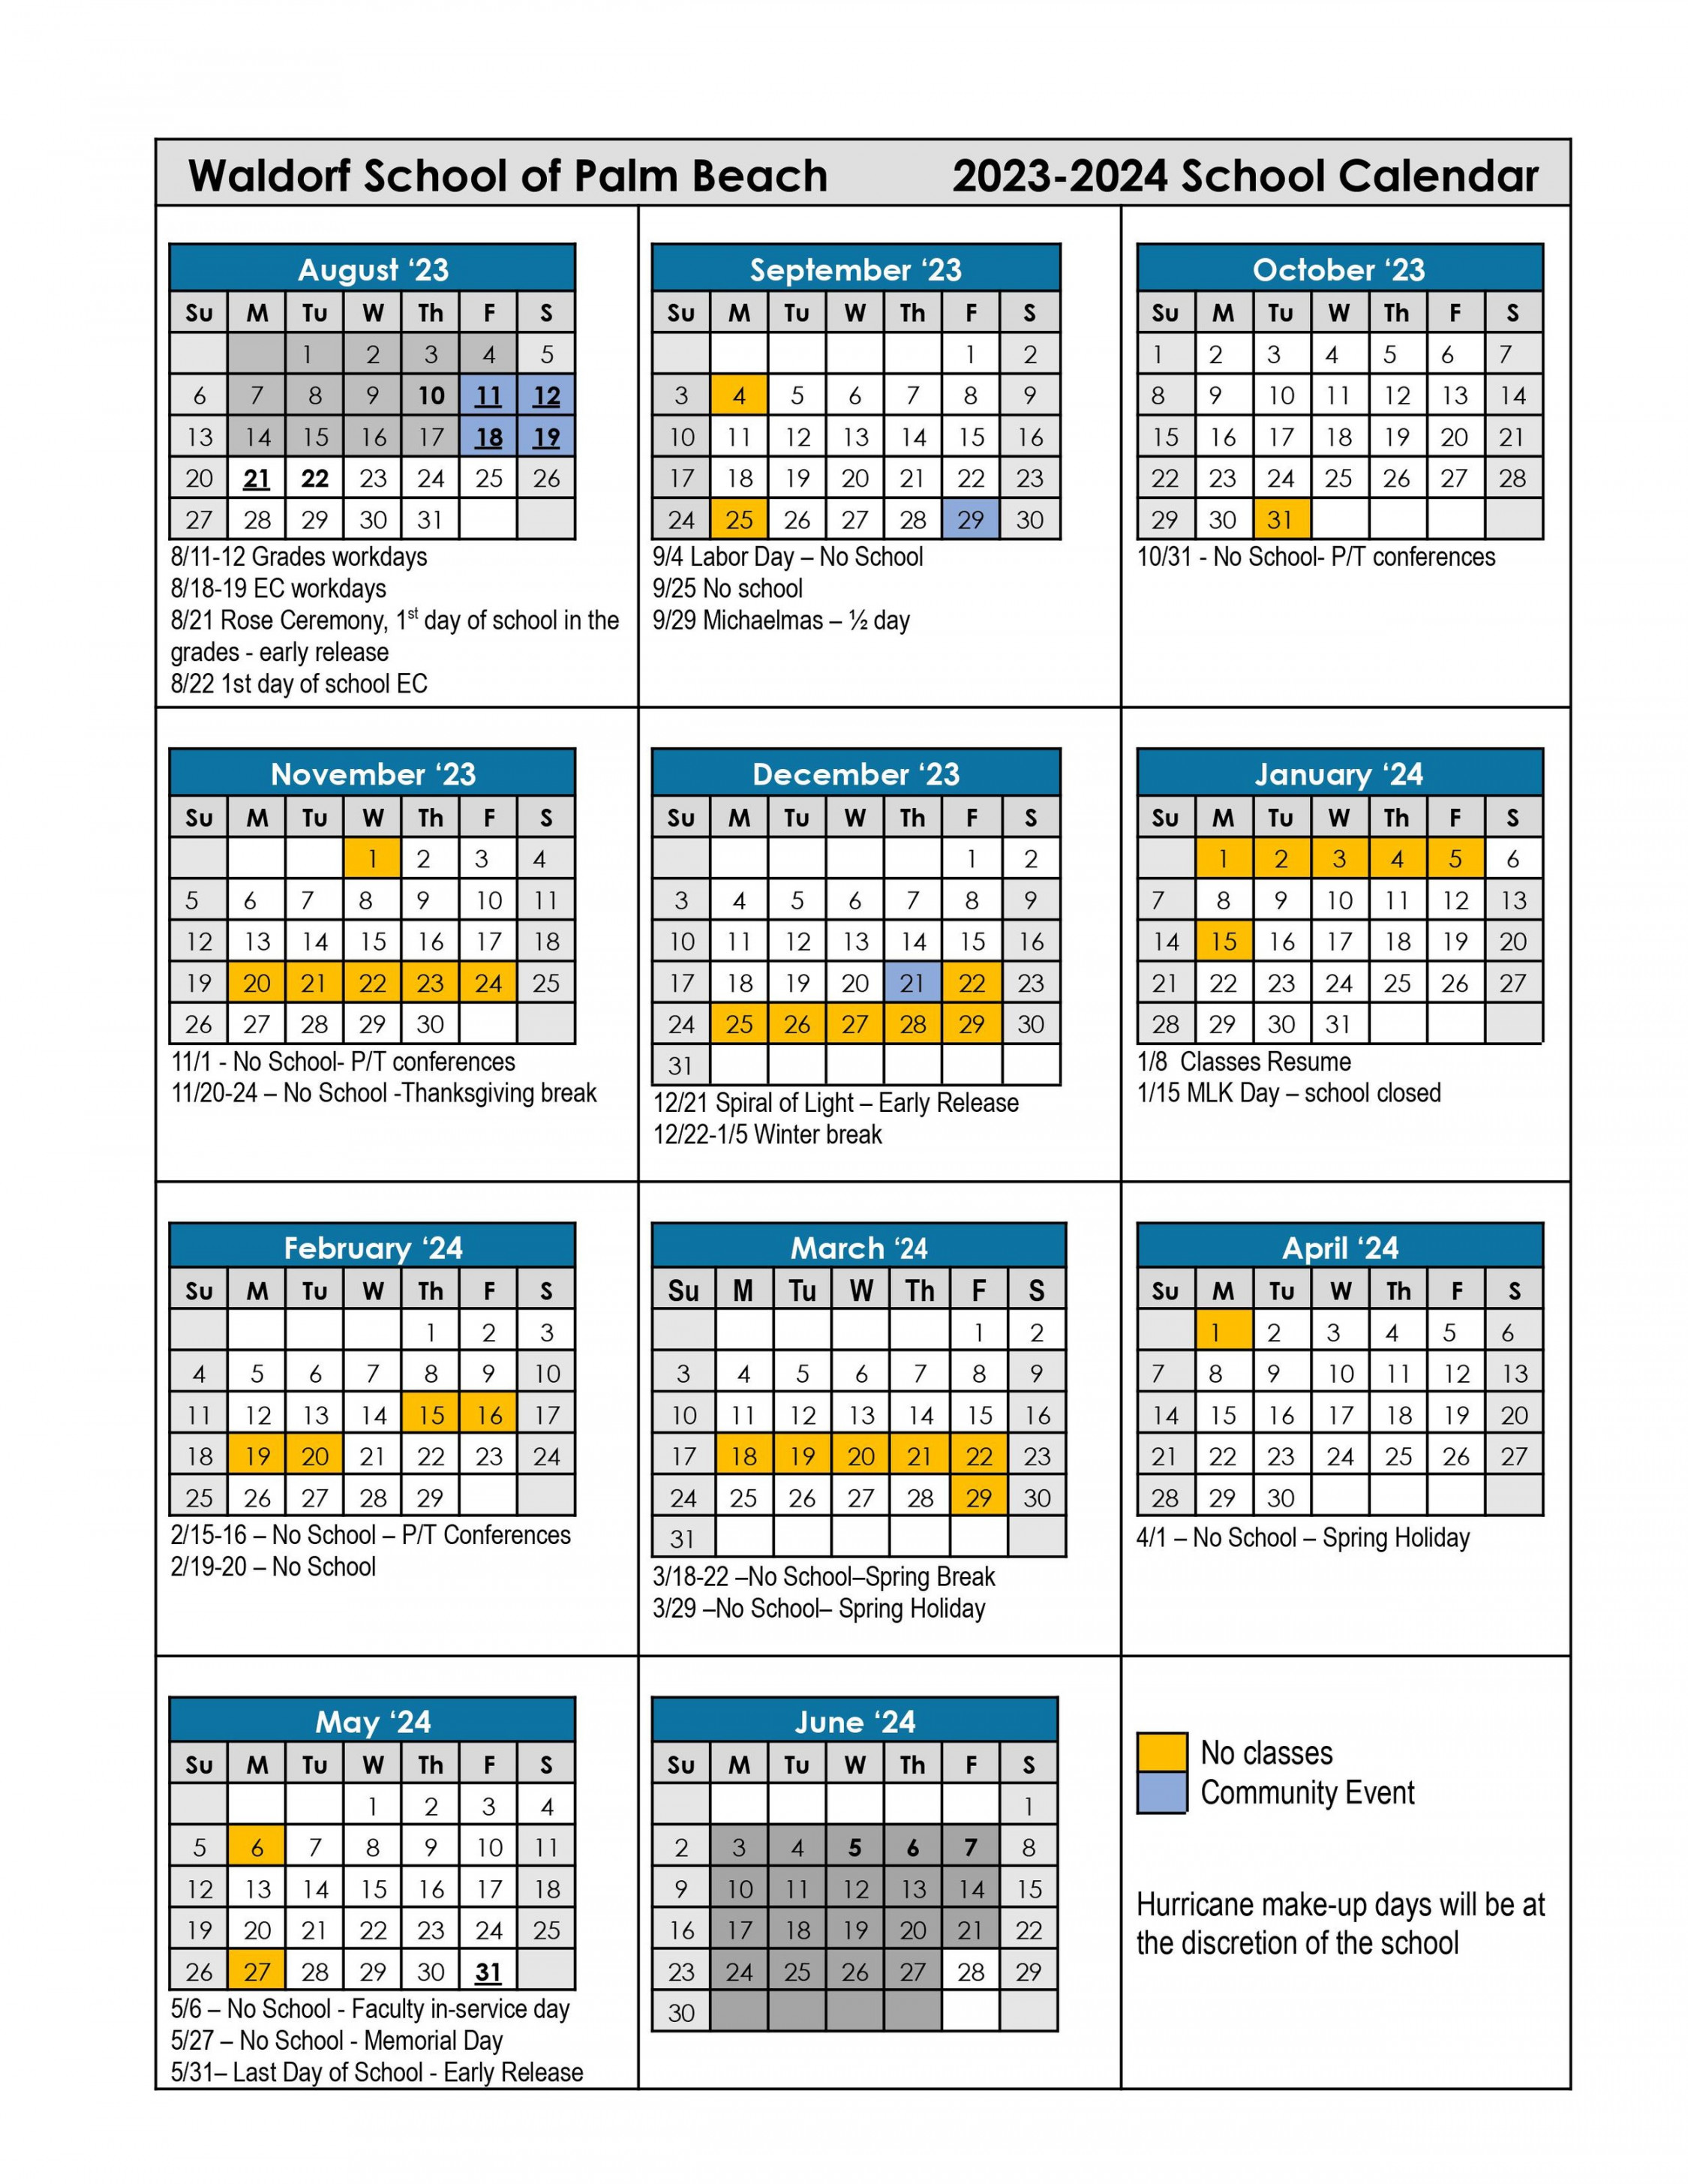 School Calendar — Waldorf School of Palm Beach